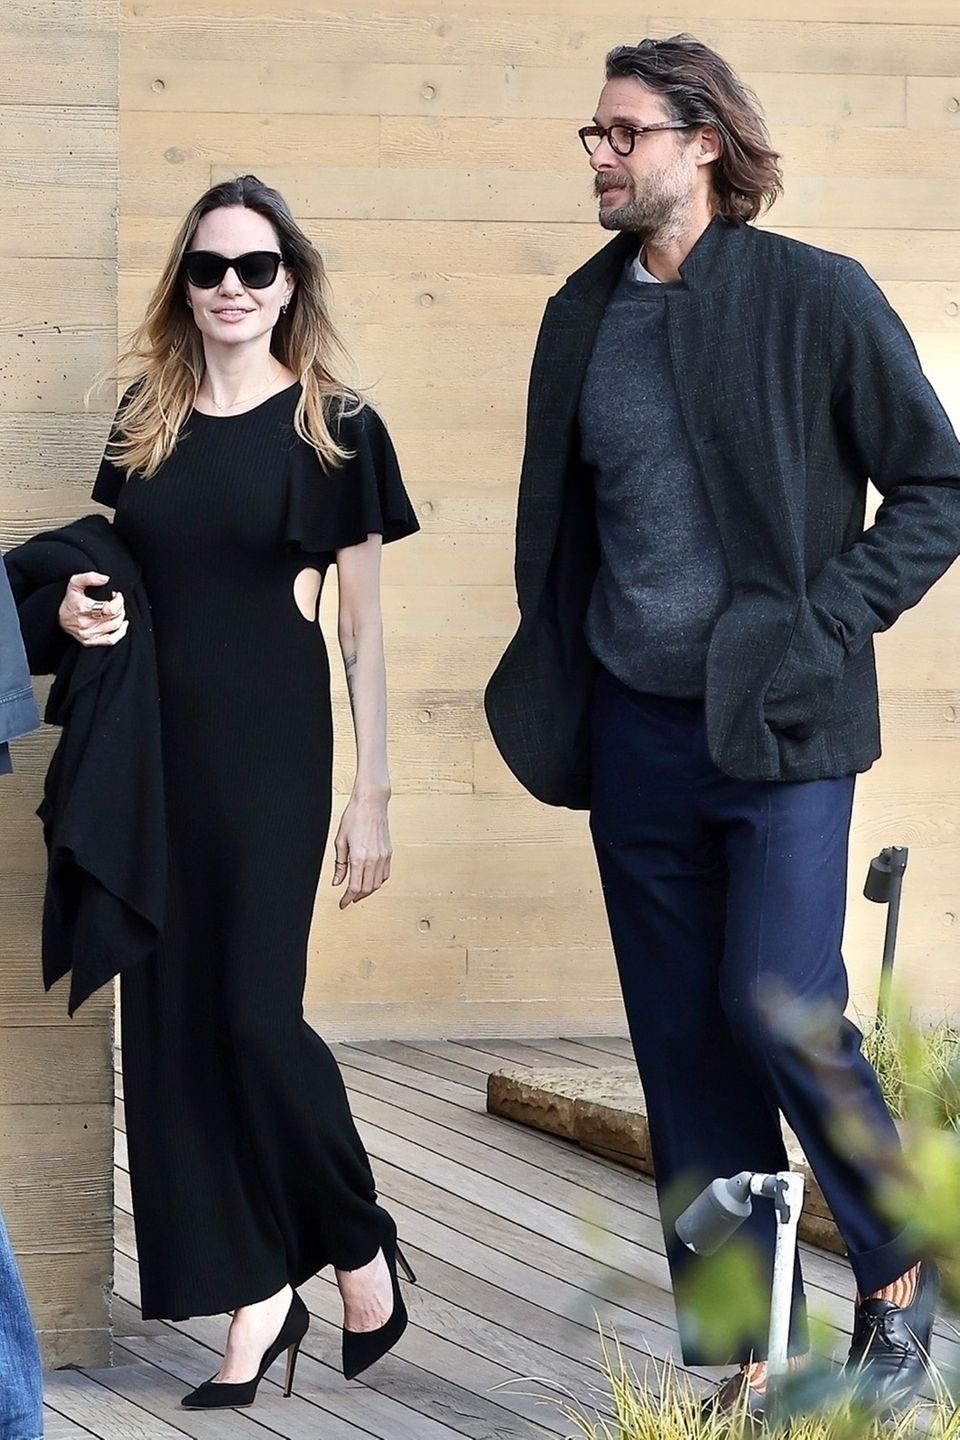 Angelina Jolie und David Mayer de Rothschild